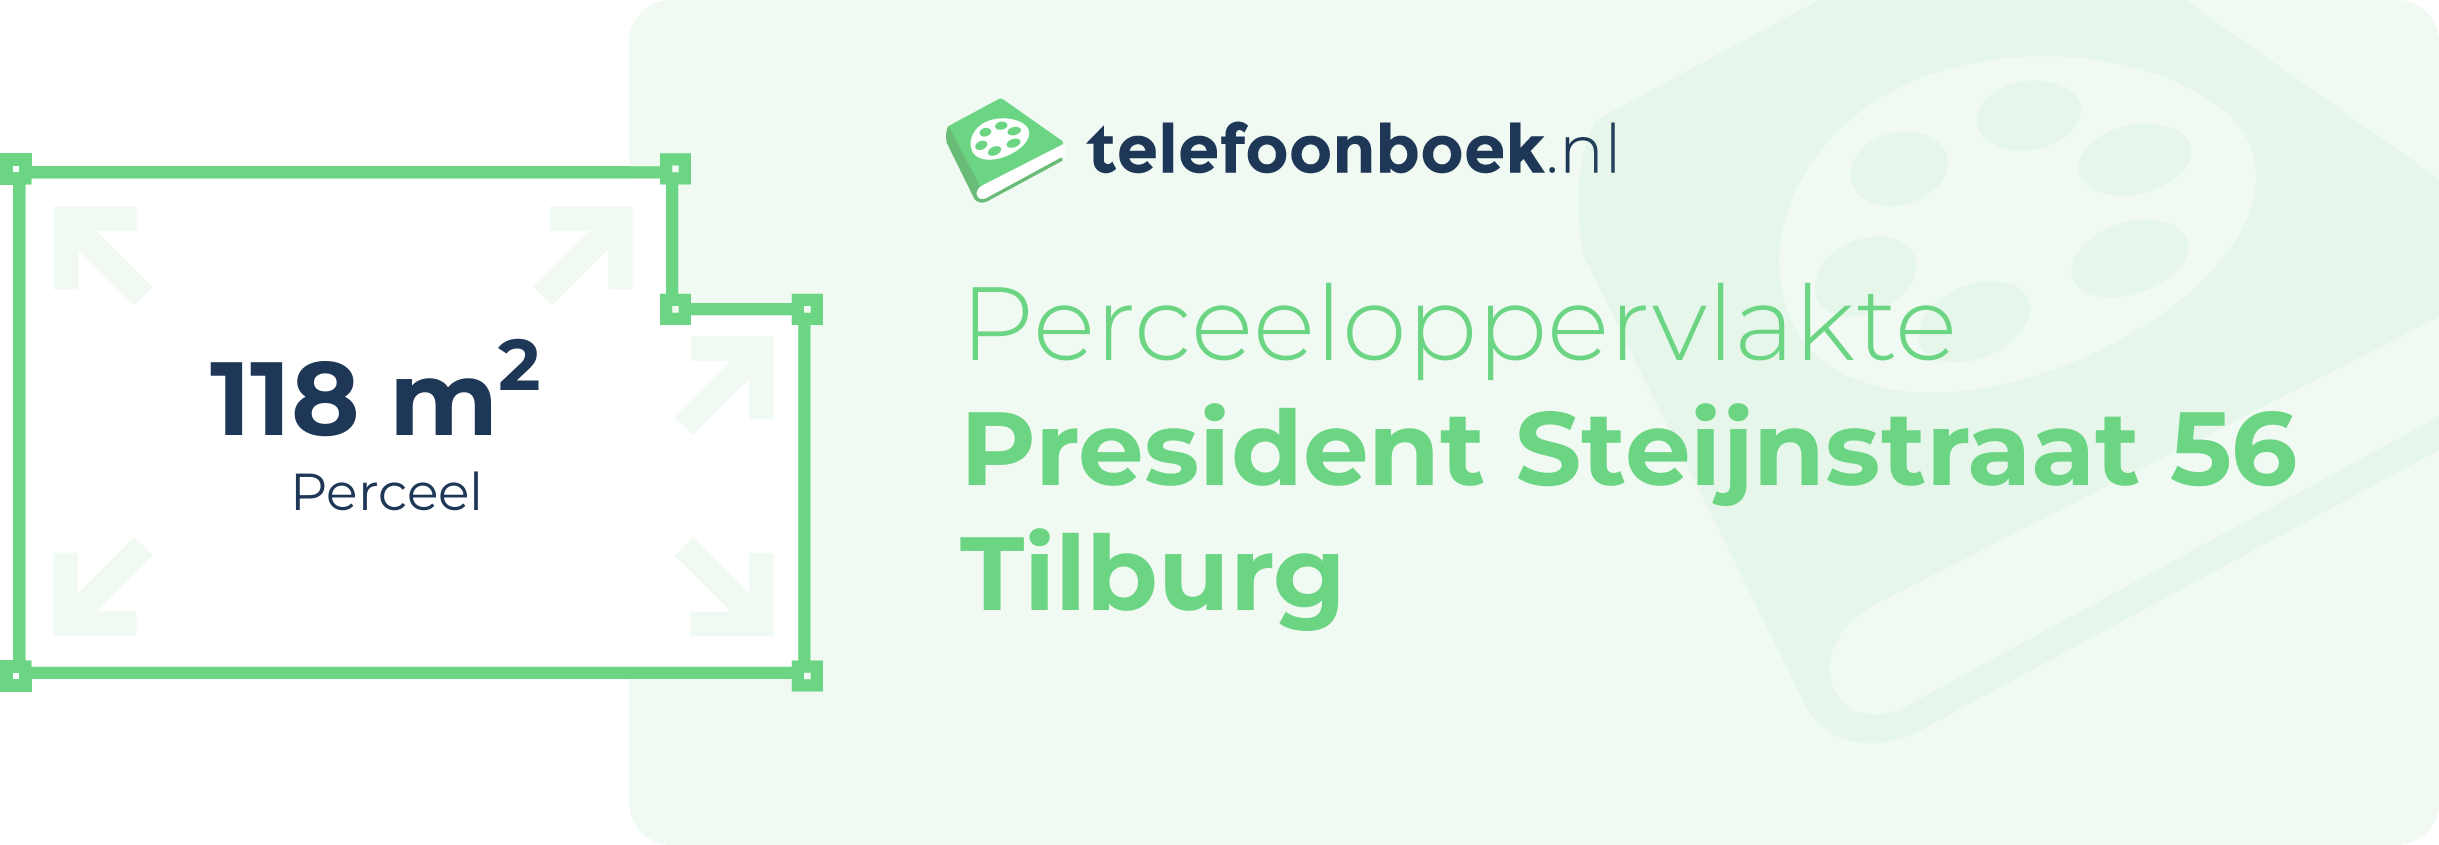 Perceeloppervlakte President Steijnstraat 56 Tilburg